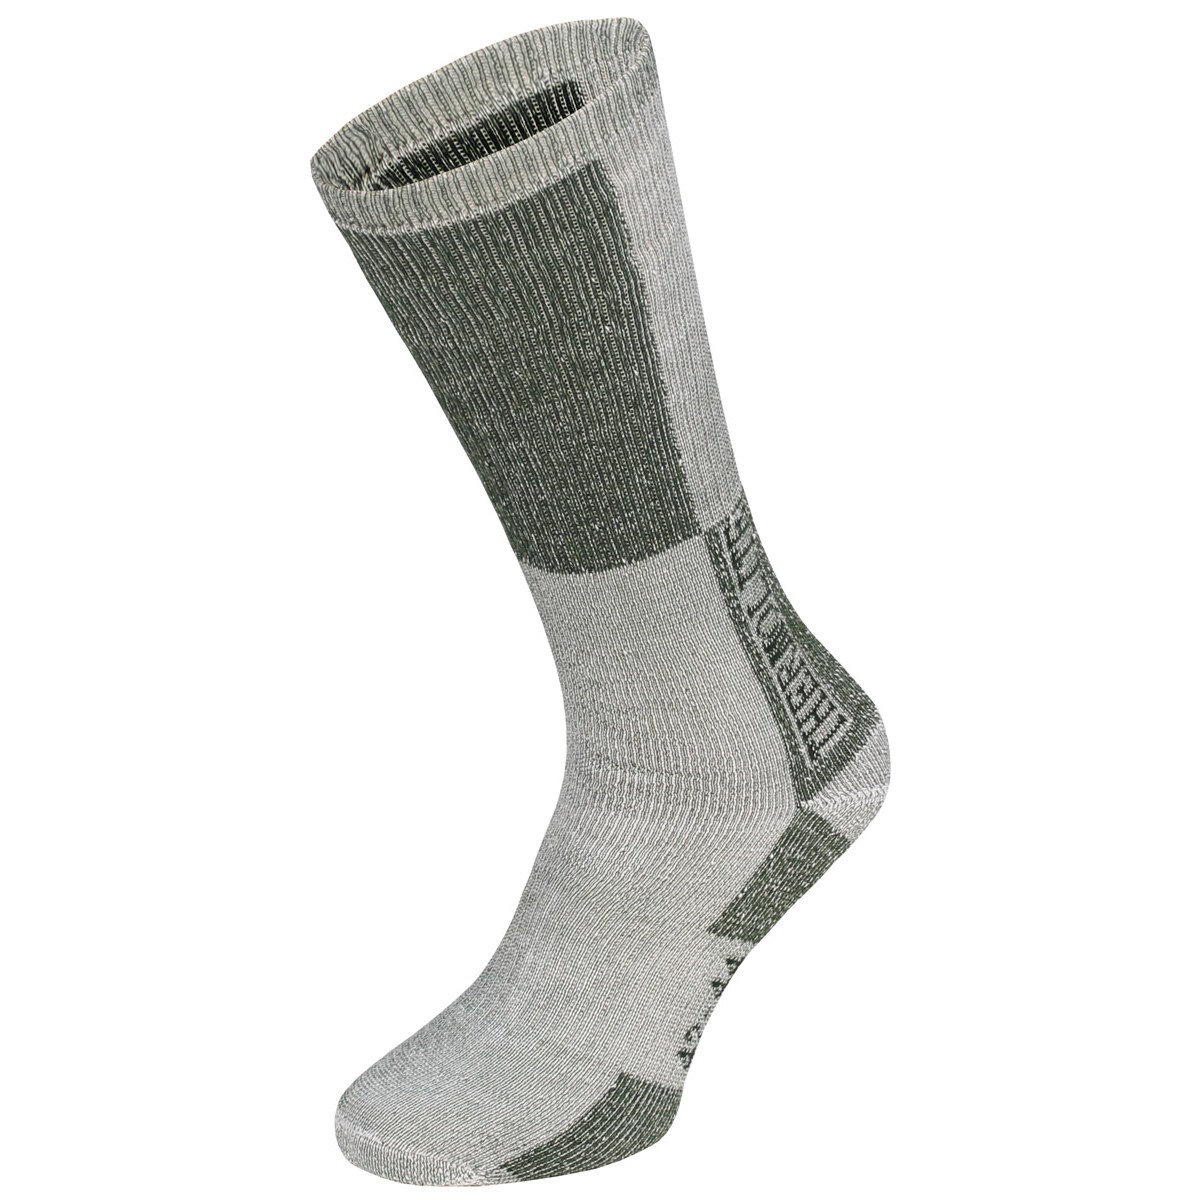 Ponožky zimní Fox Polar - šedé, 39-41